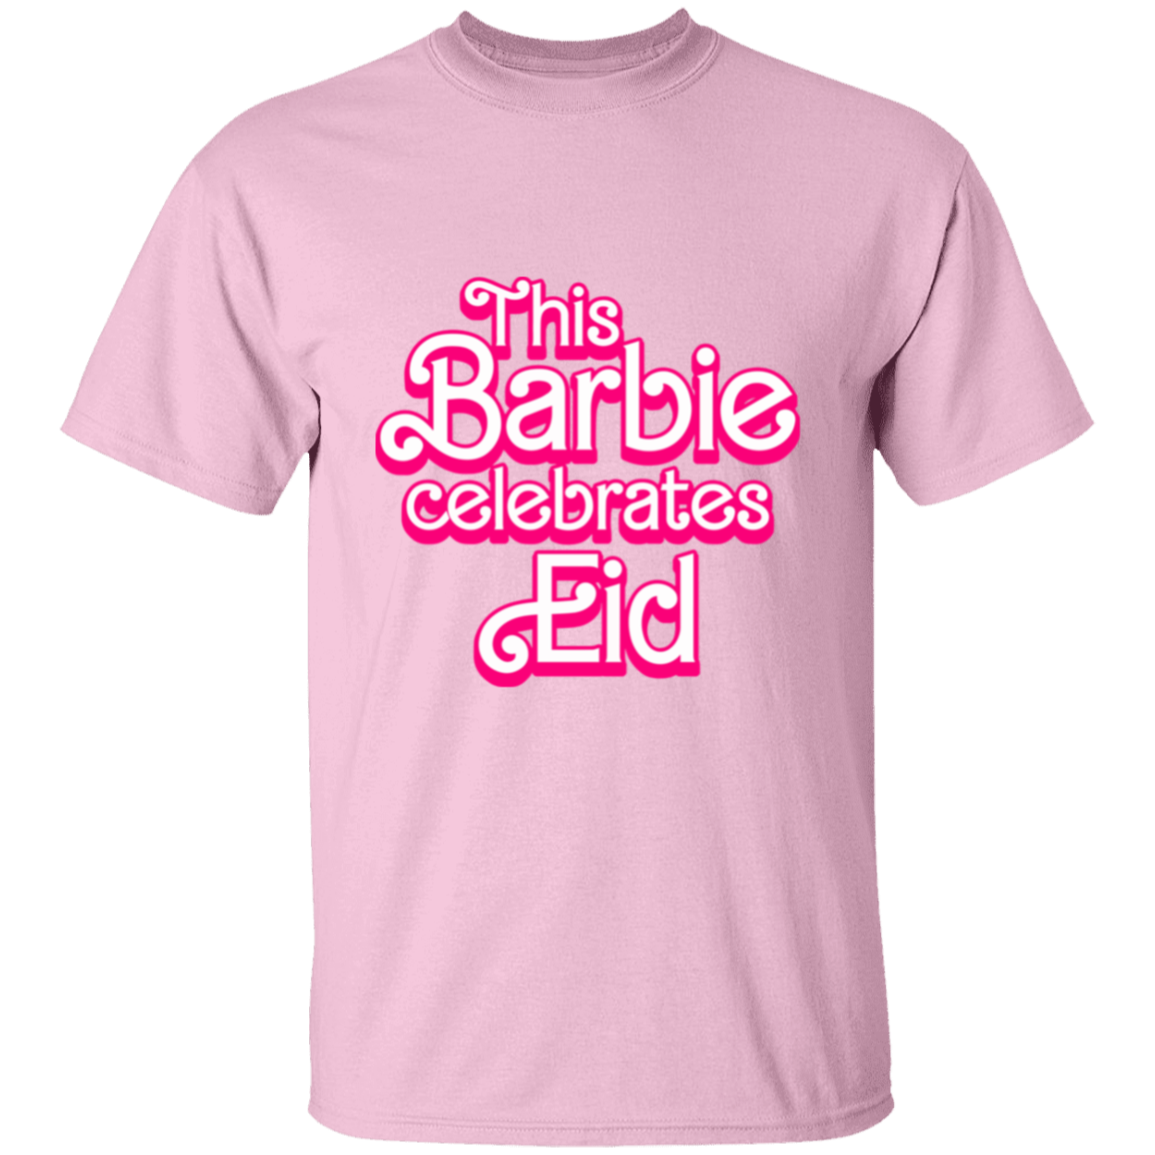 Eid in Pink T-shirt - Unisex